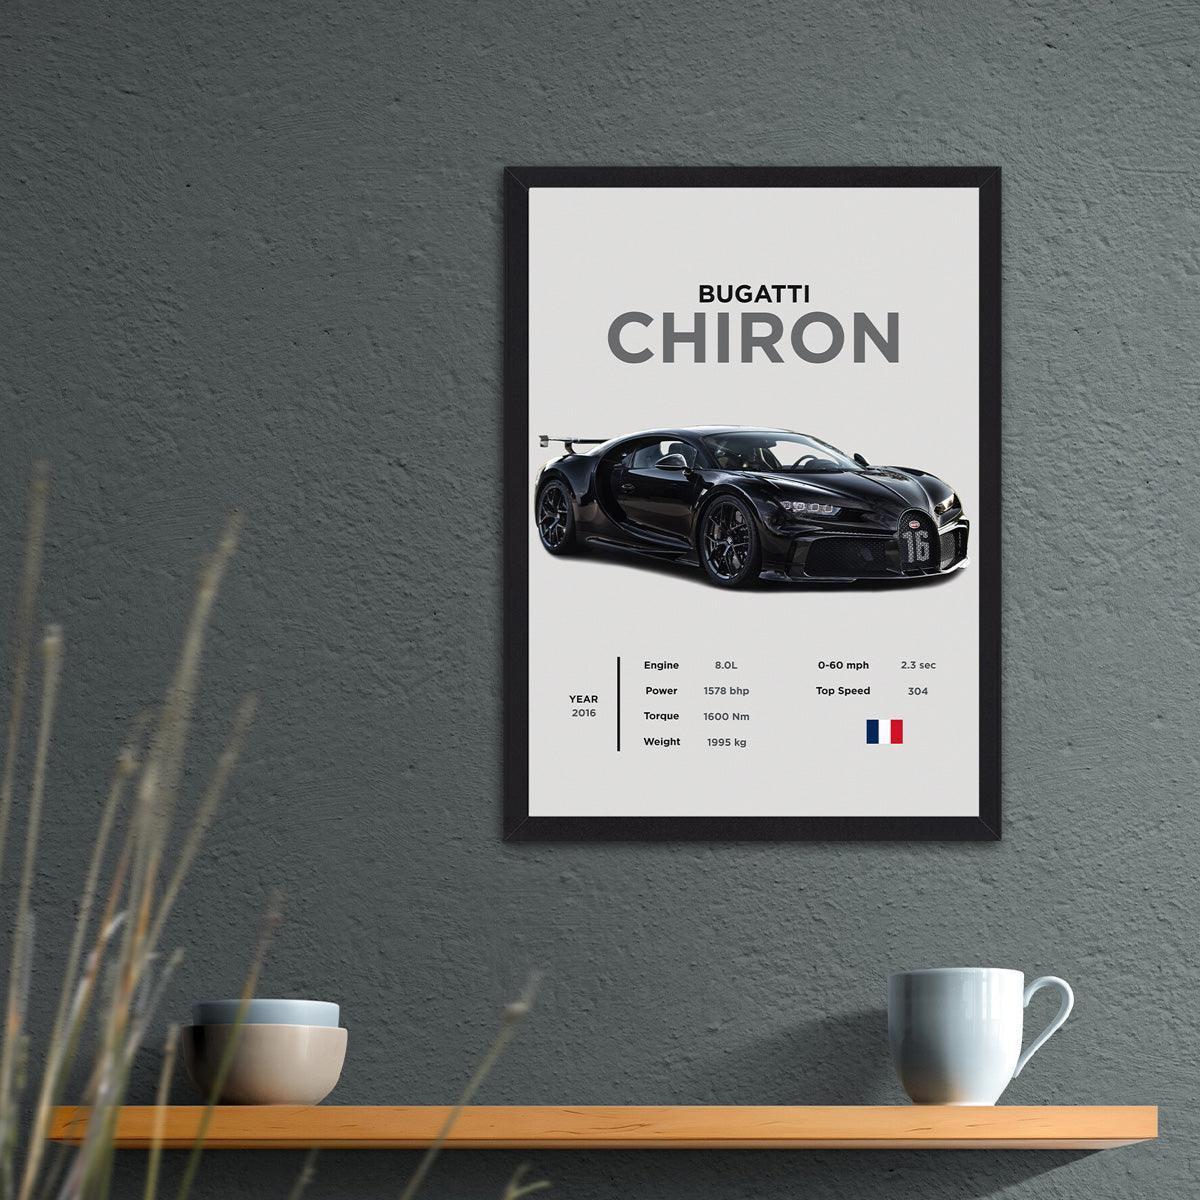 Bugatti Chiron - Pinnacle of Performance - PixMagic